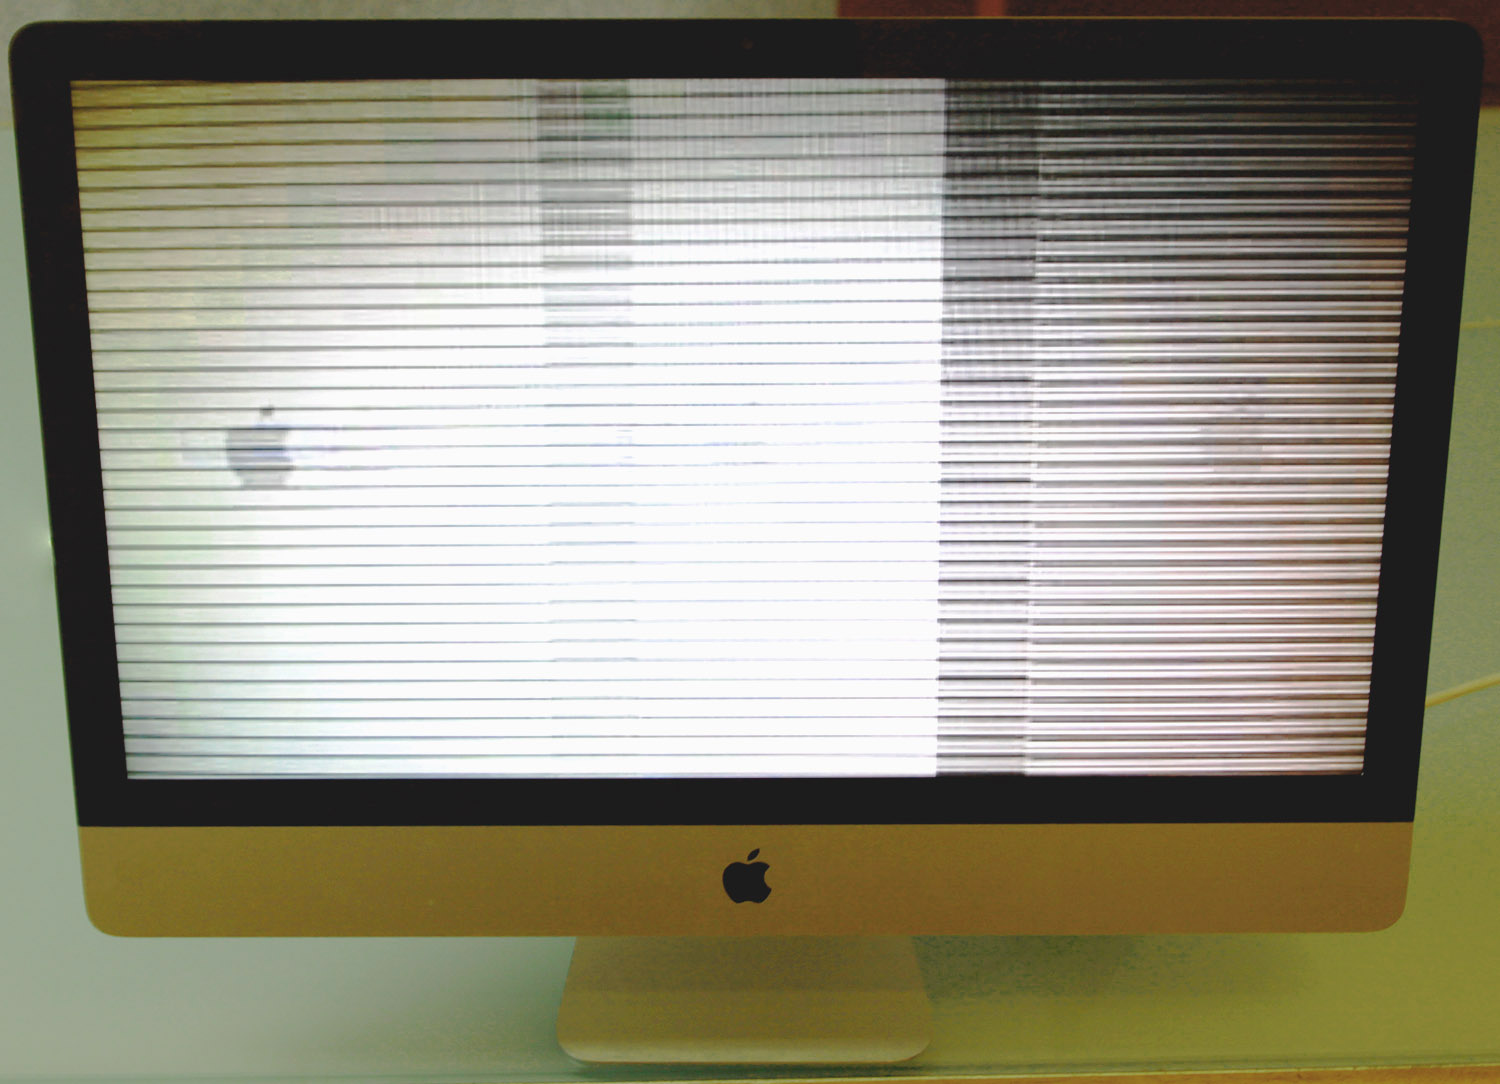 Streifen auf dem ganzen Bildschirm eines iMac aufgrund eines defekten Grafikchips (GPU)